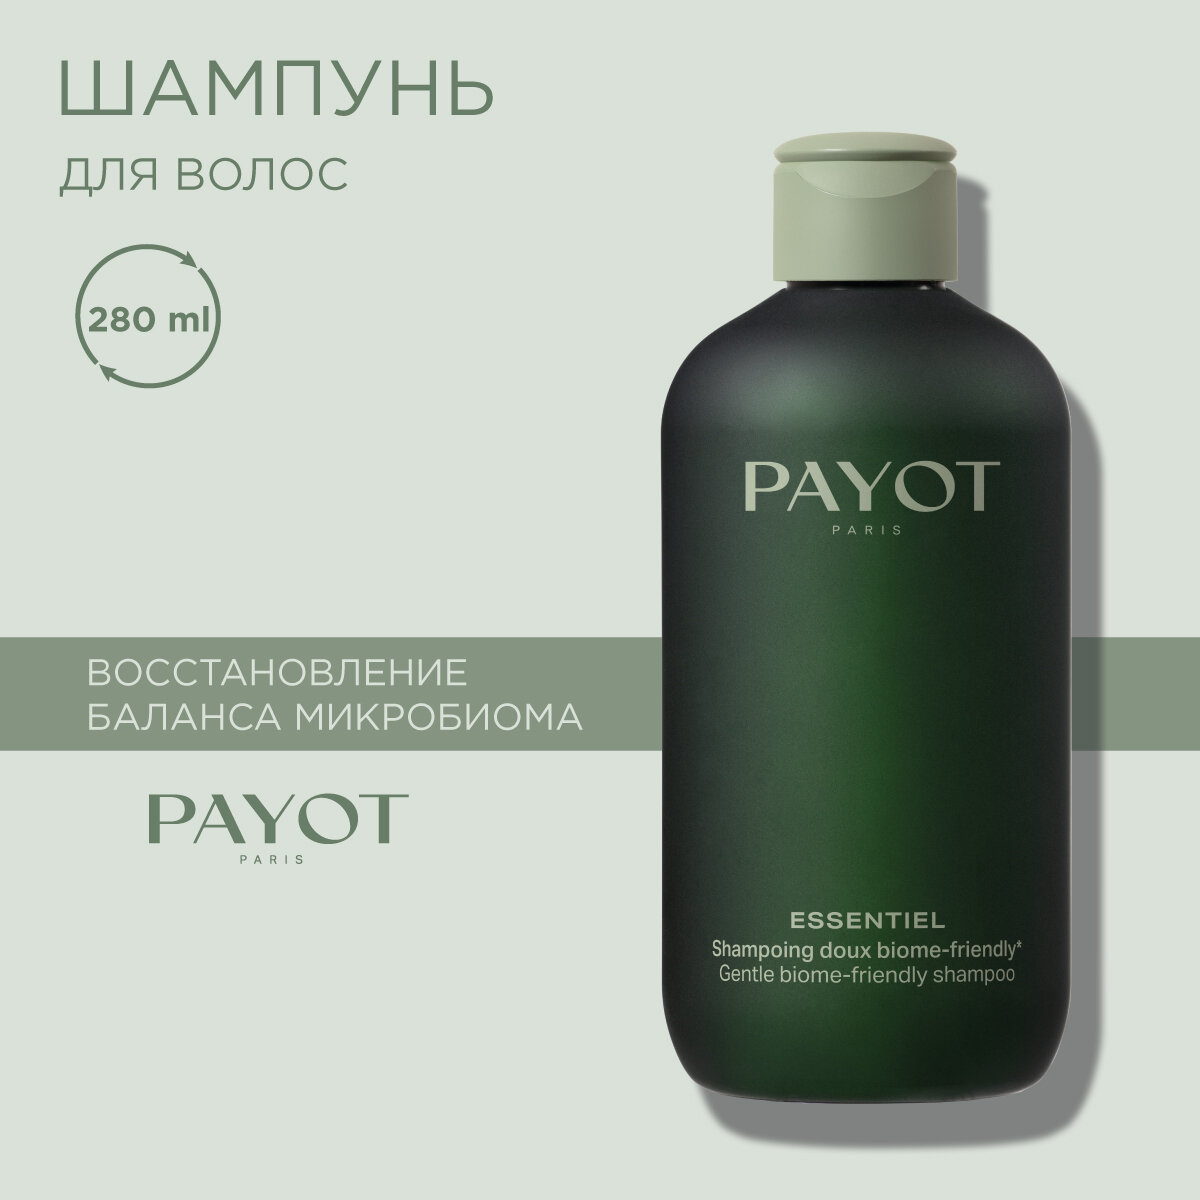 PAYOT Essentiel Шампунь для волос деликатный дружественный биому, 280 мл